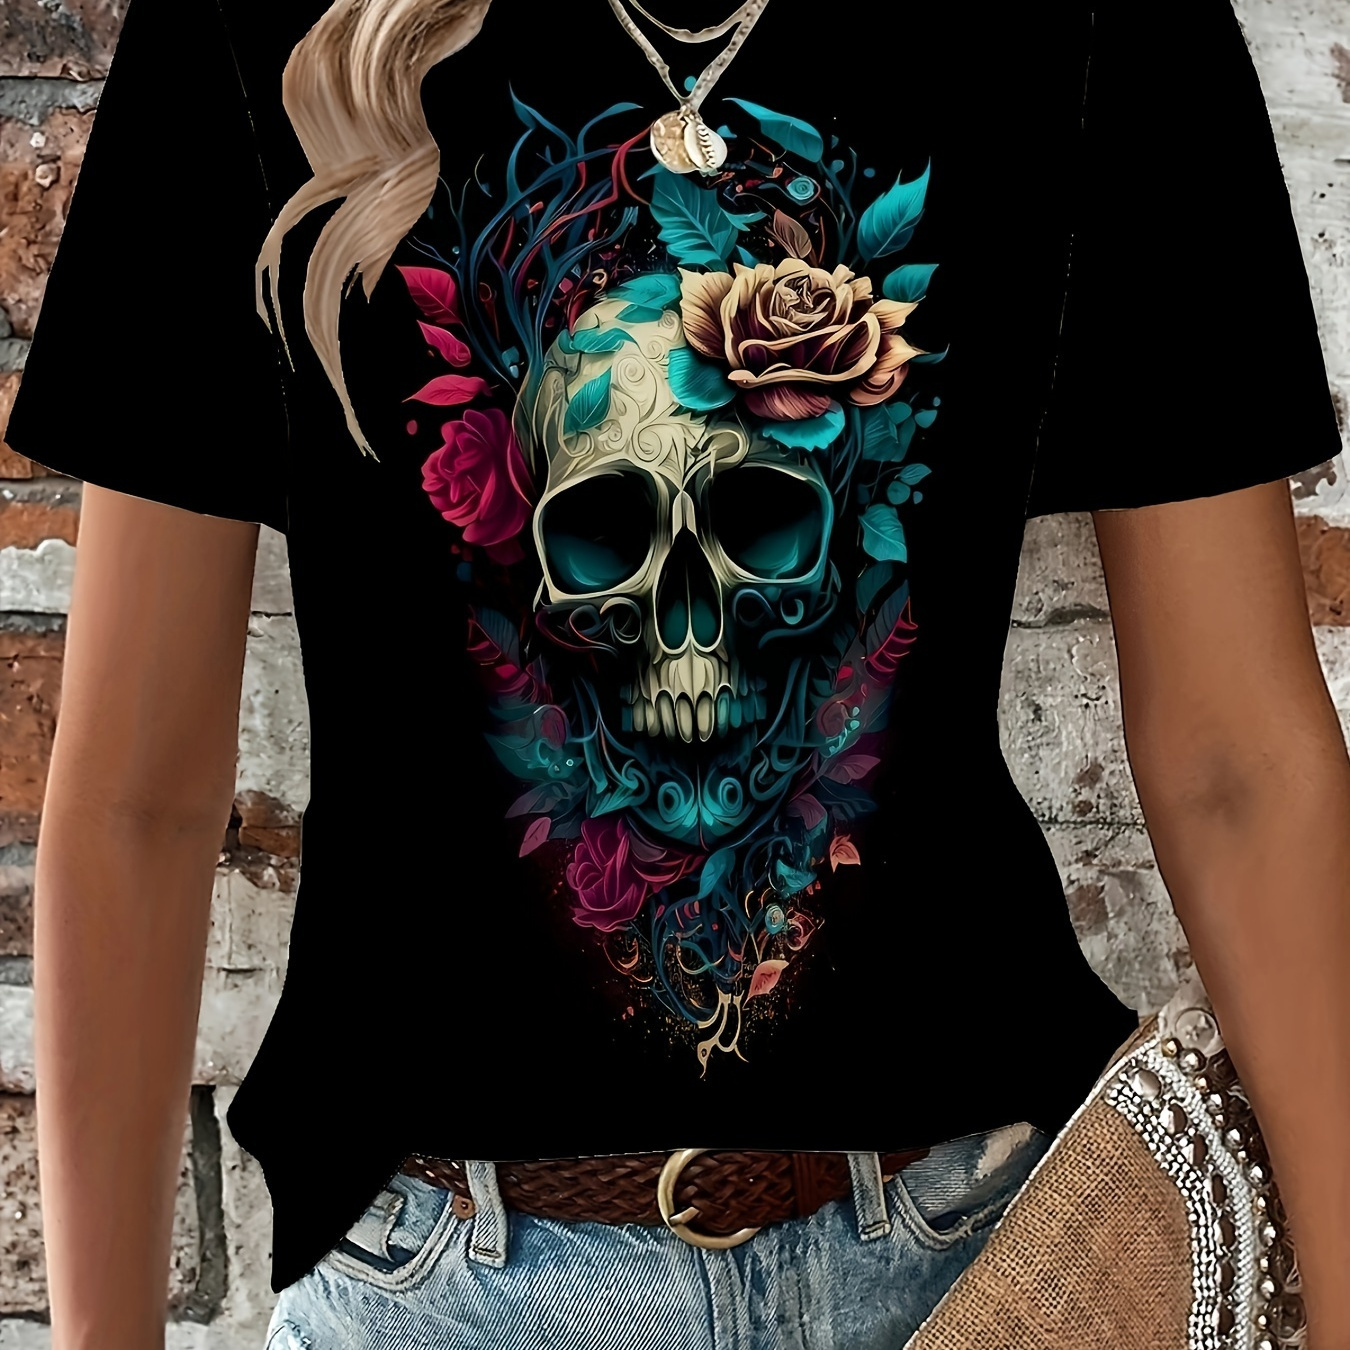 

Skull & Flower Print Vintage T-shirt, Crew Neck Short Sleeve Top For Spring & Summer, Women's Clothing